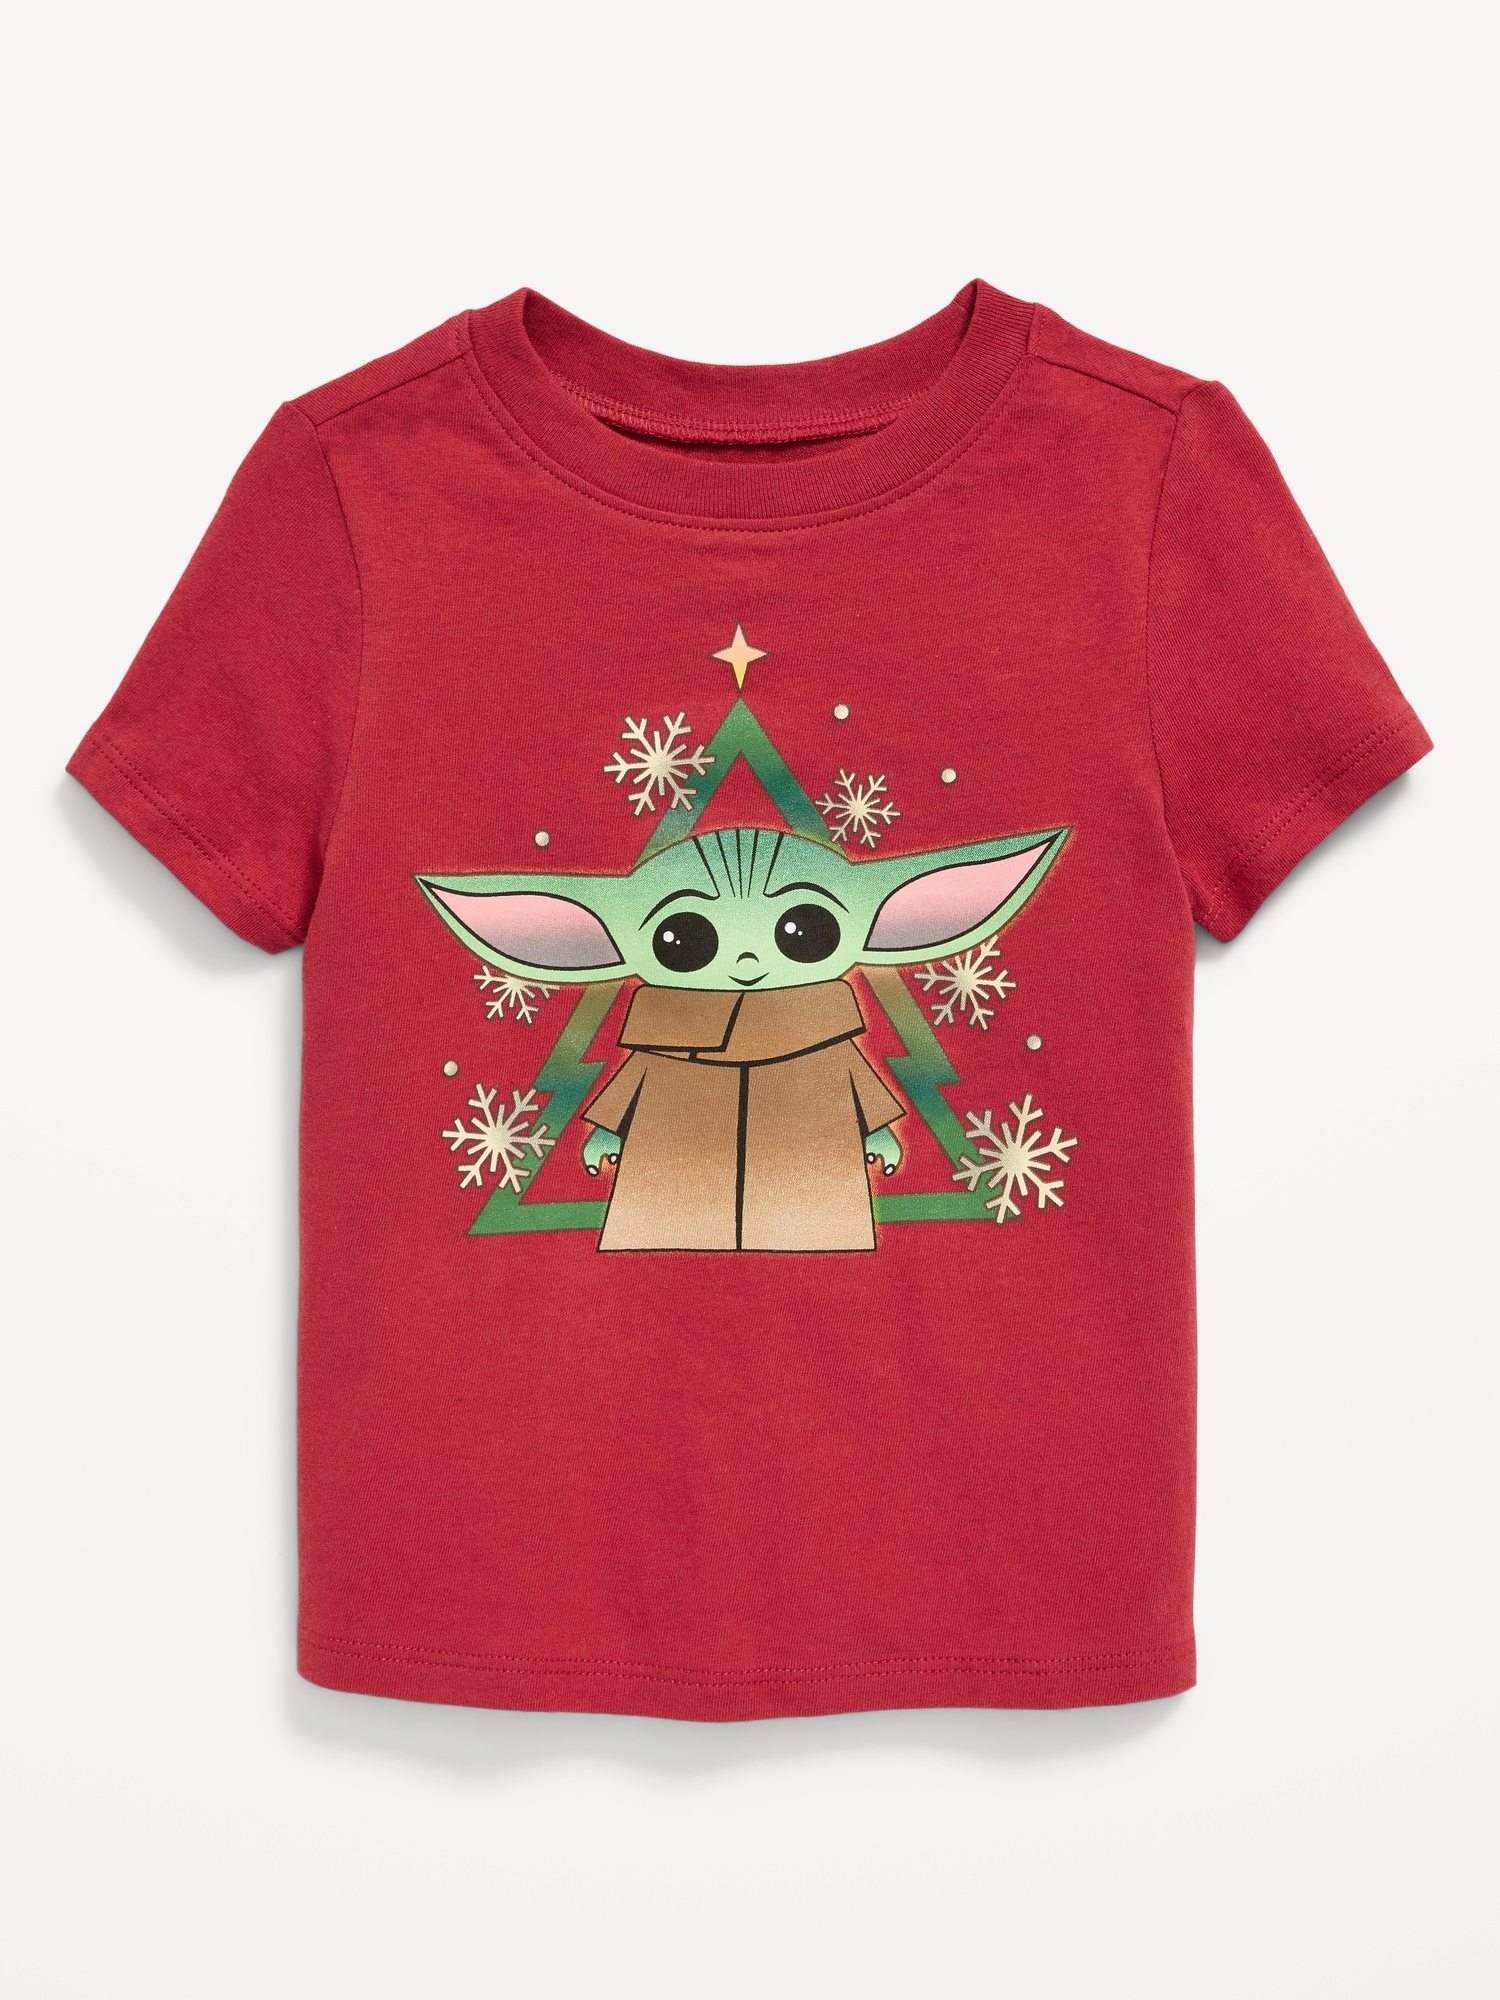 Oldnavy Star Wars: The Mandalorian Grogu Christmas Unisex T-Shirt for Toddler